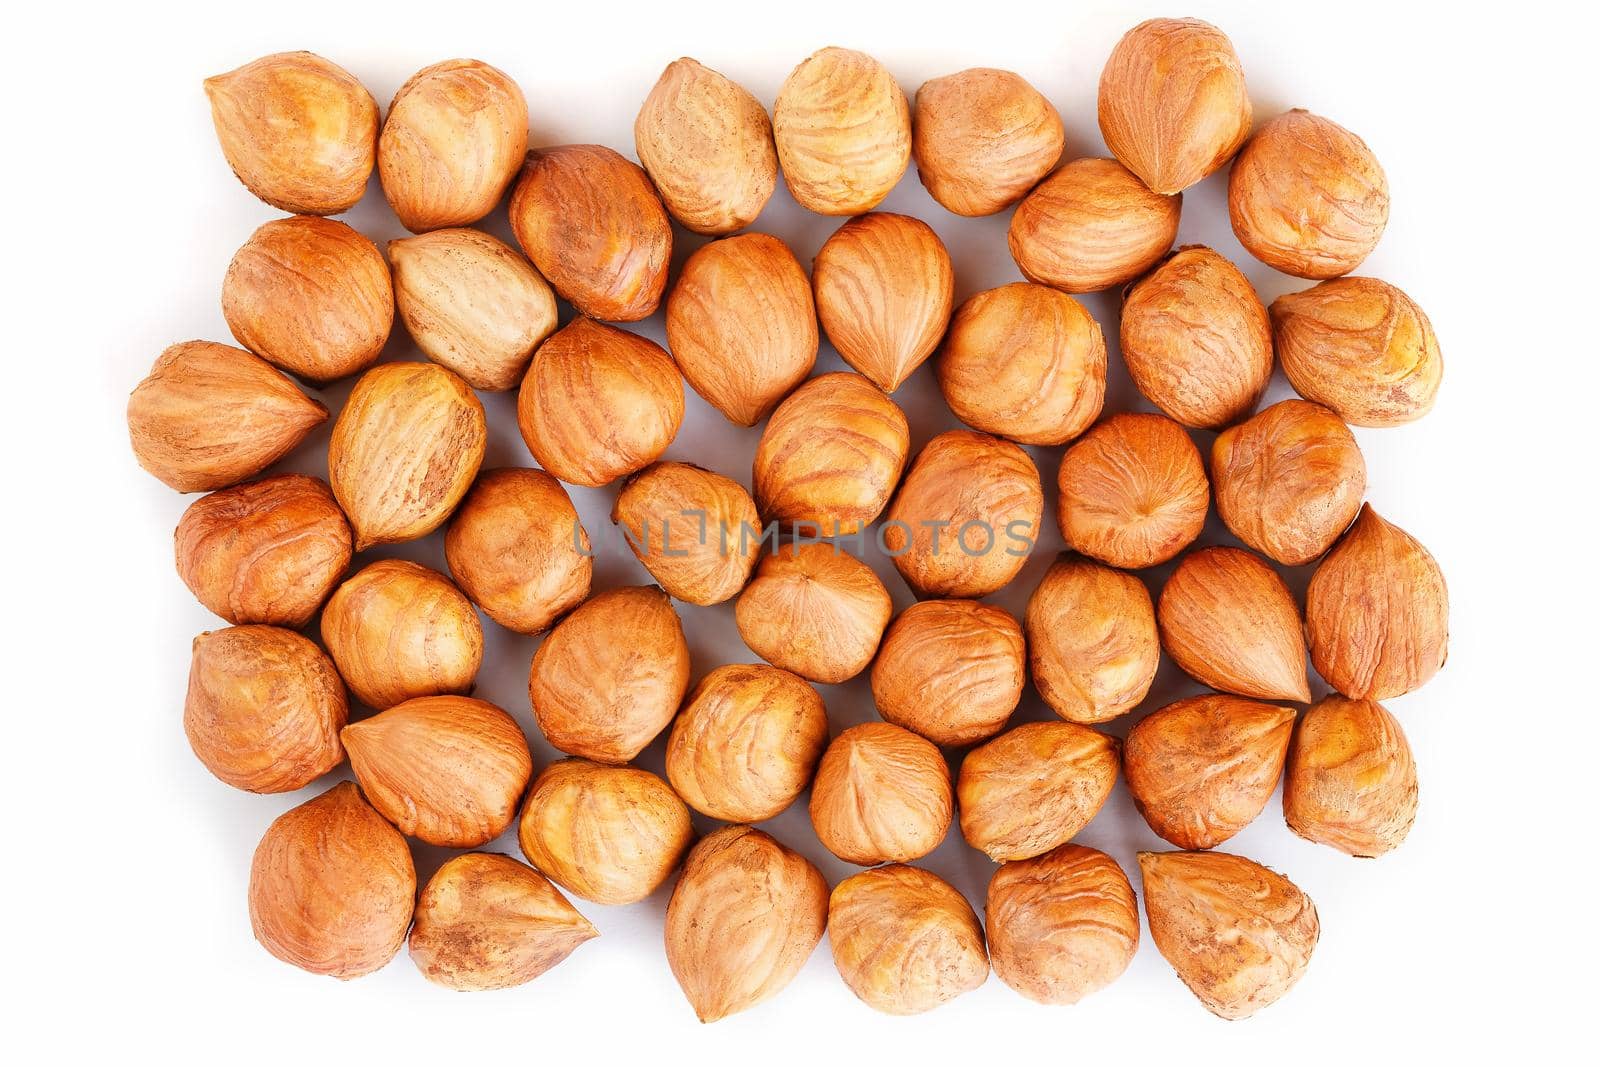 Heap of hazelnuts isolated on white background, macro image.